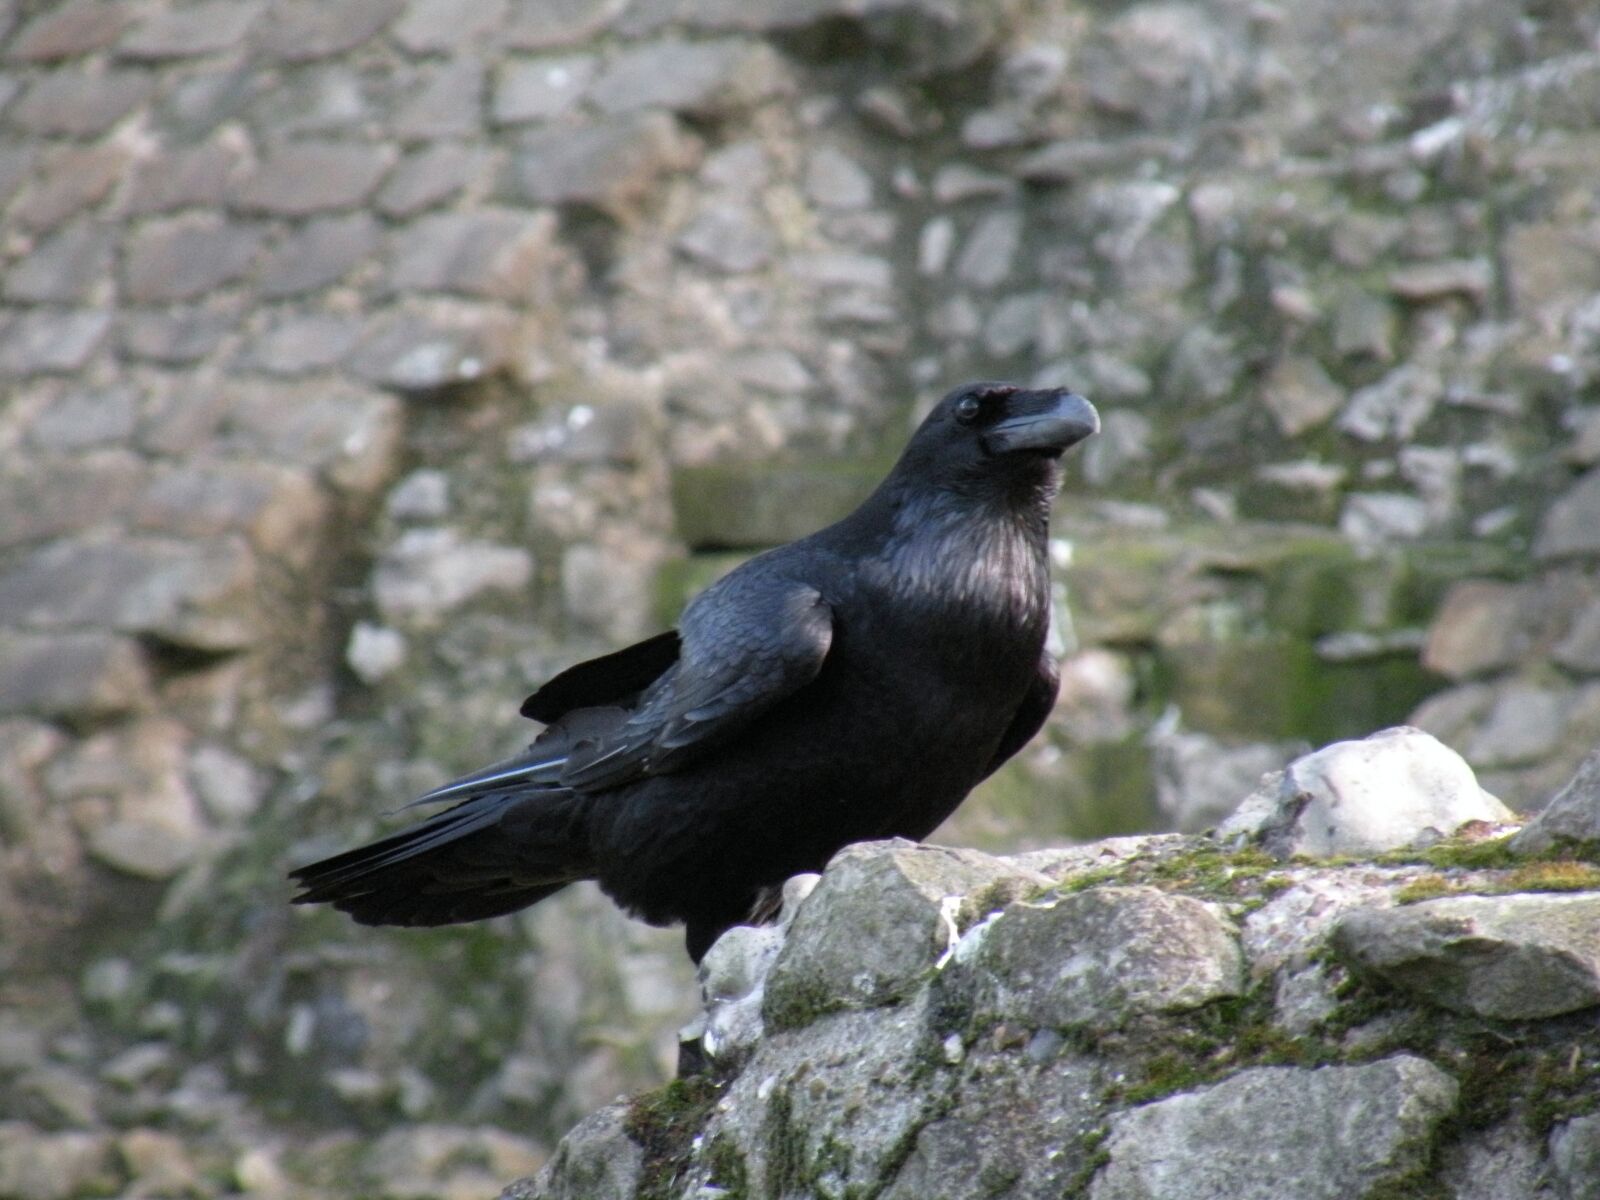 Nikon Coolpix P80 sample photo. Bird, black, crow photography